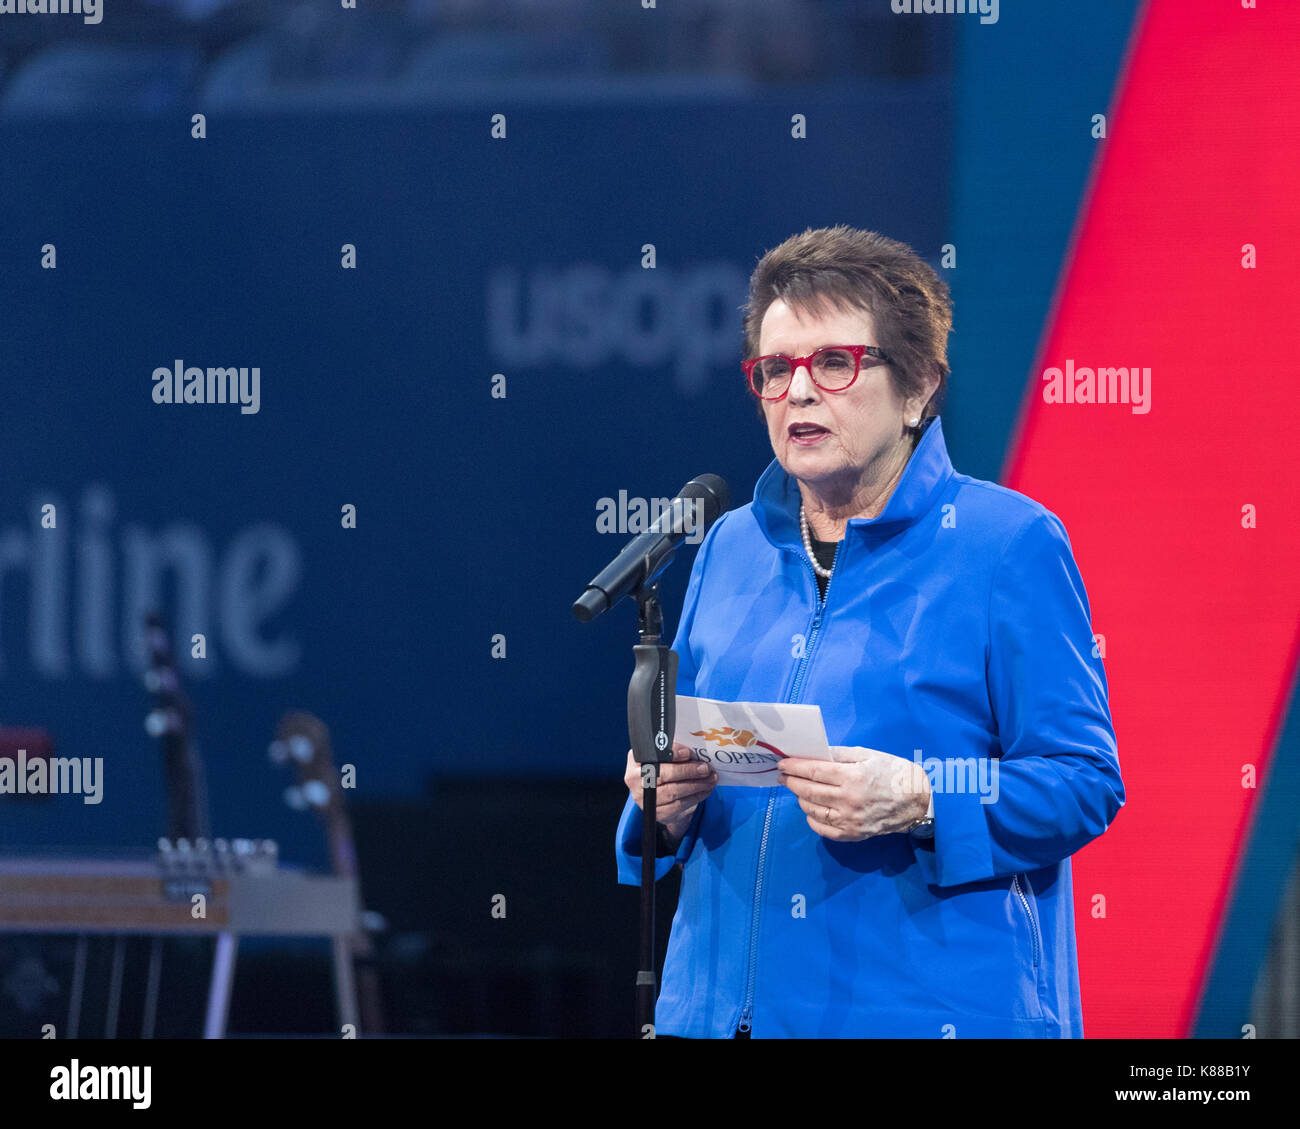 New york, ny, Stati Uniti d'America - 28 agosto 2017: Billie Jean King parla durante la serata di apertura cerimonia del 2017 US Open Championships a Billie Jean King tennis center Foto Stock